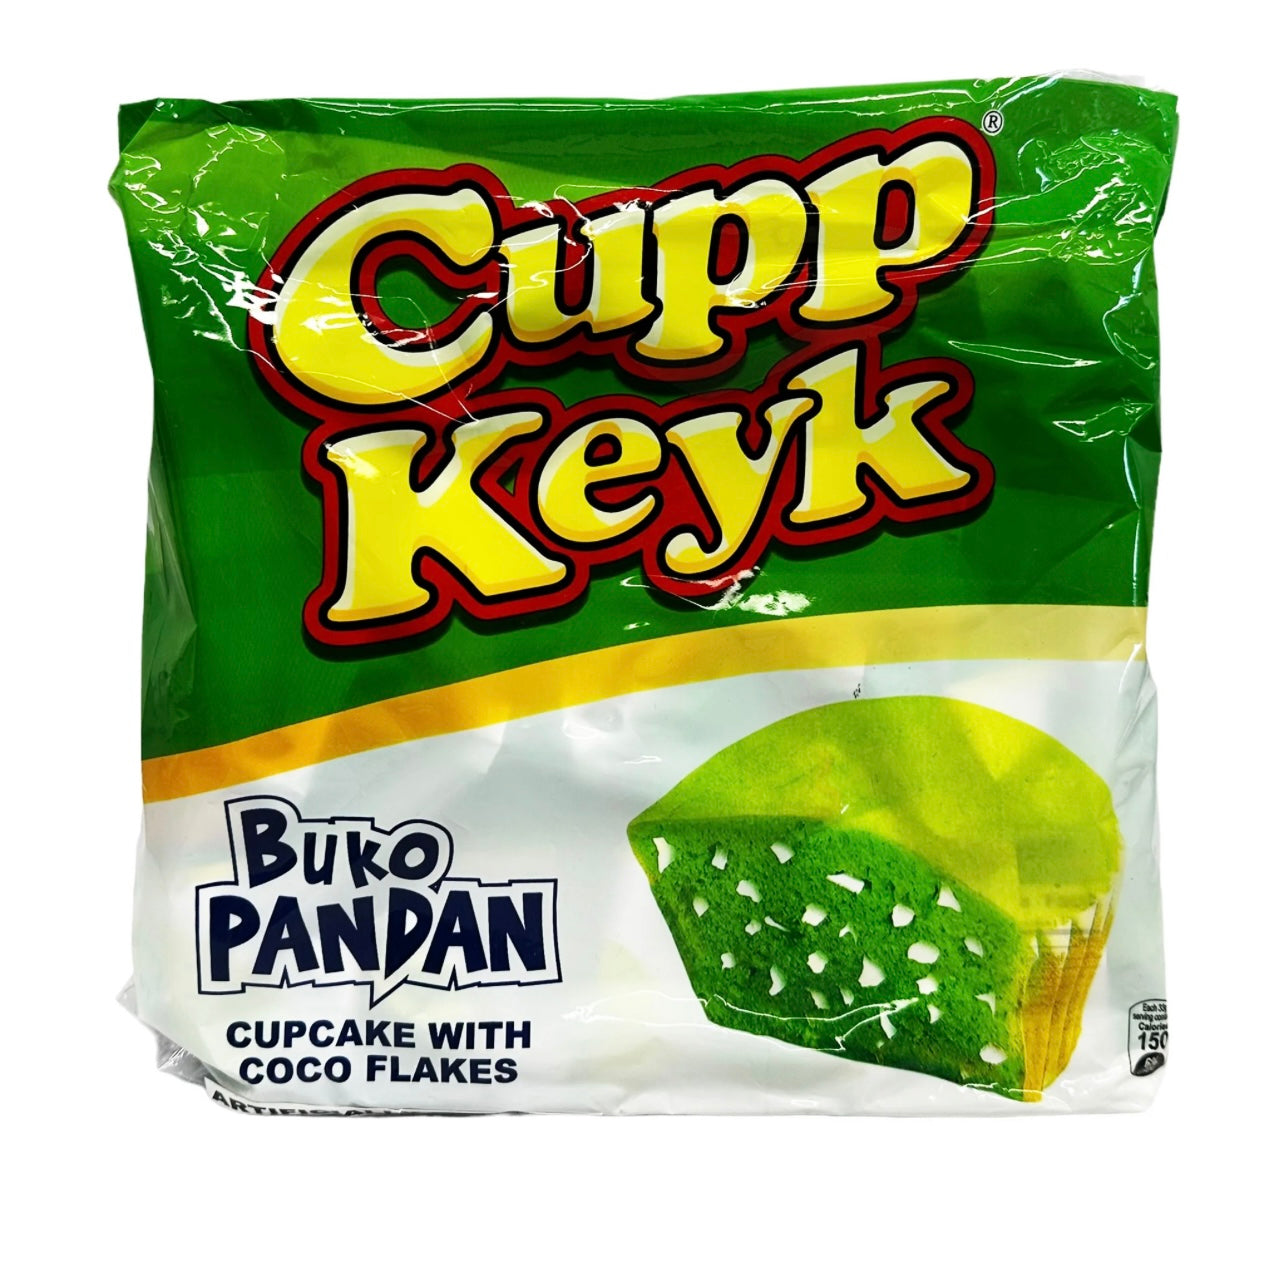 Suncrest Cupp Keyk - Buko Pandan